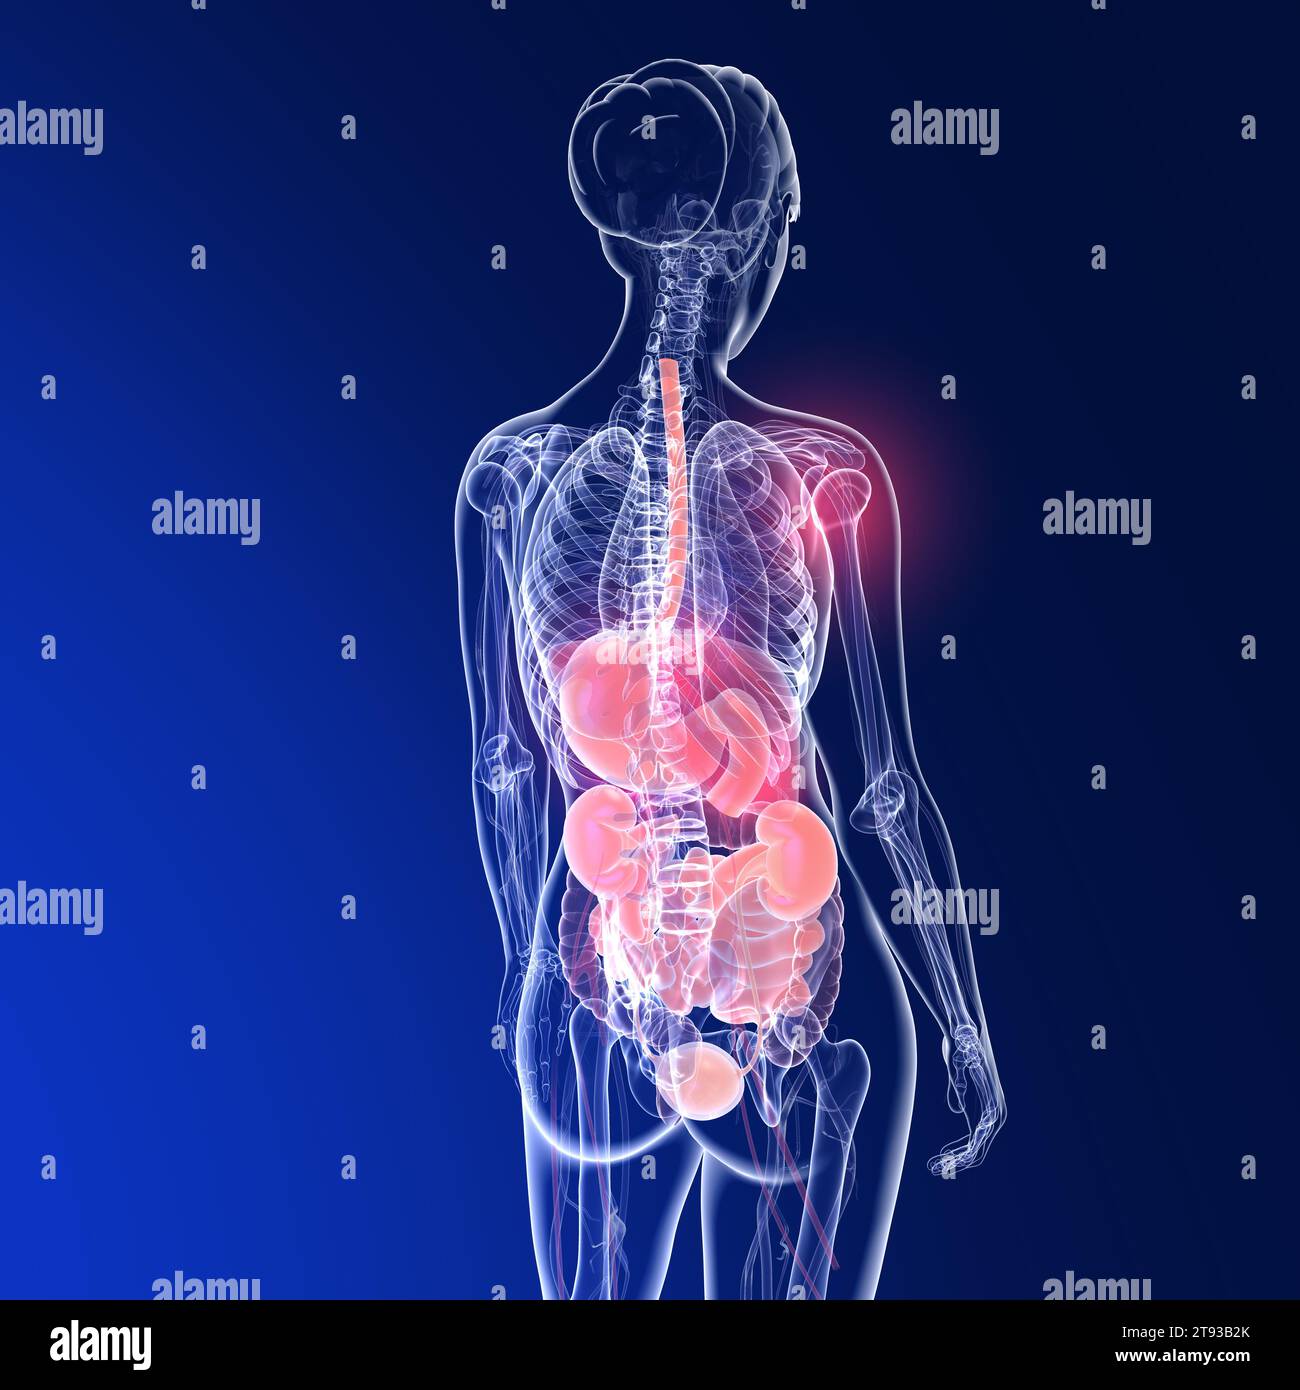 Illustration 3D transparente de l'anatomie du dos d'une femme. Montrant le squelette et les organes internes sur fond bleu. Banque D'Images